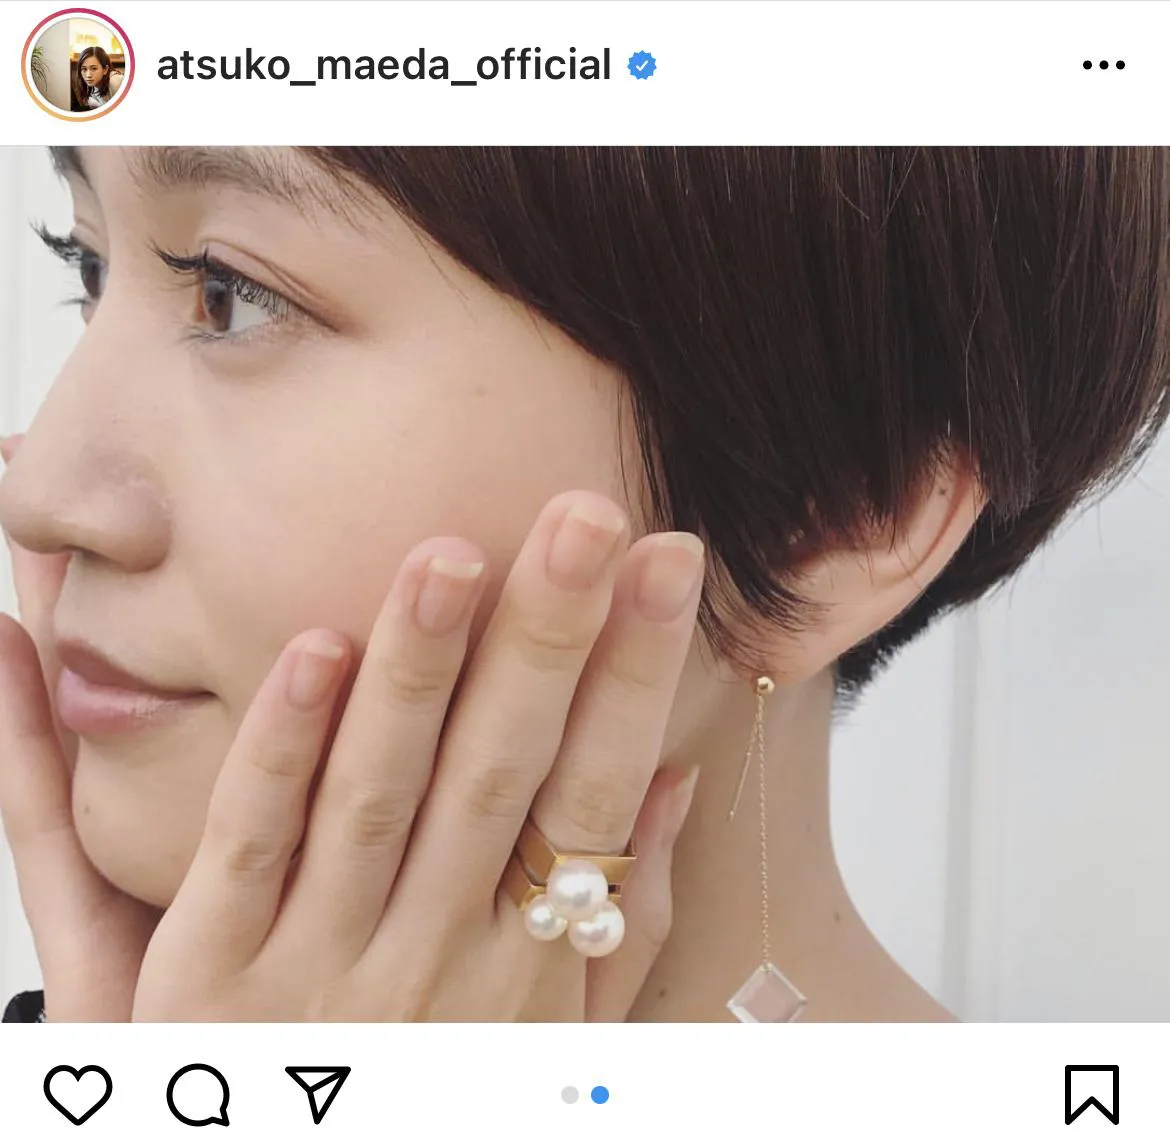 ※画像は前田敦子(atsuko_maeda_official)公式Instagramのスクリーンショット